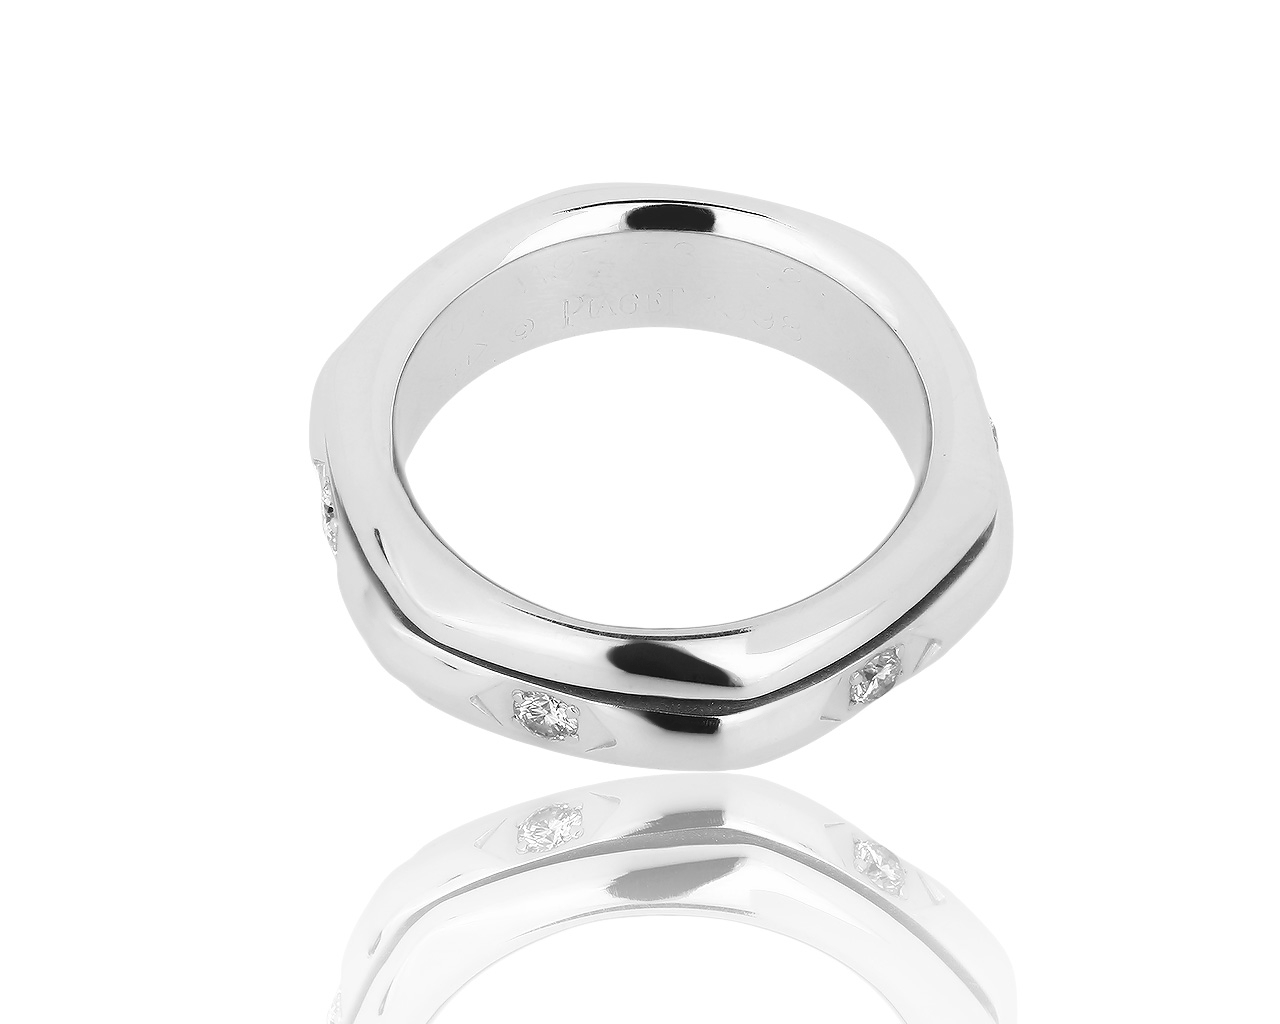 Оригинальное золотое кольцо с бриллиантами 0.20ct Piaget